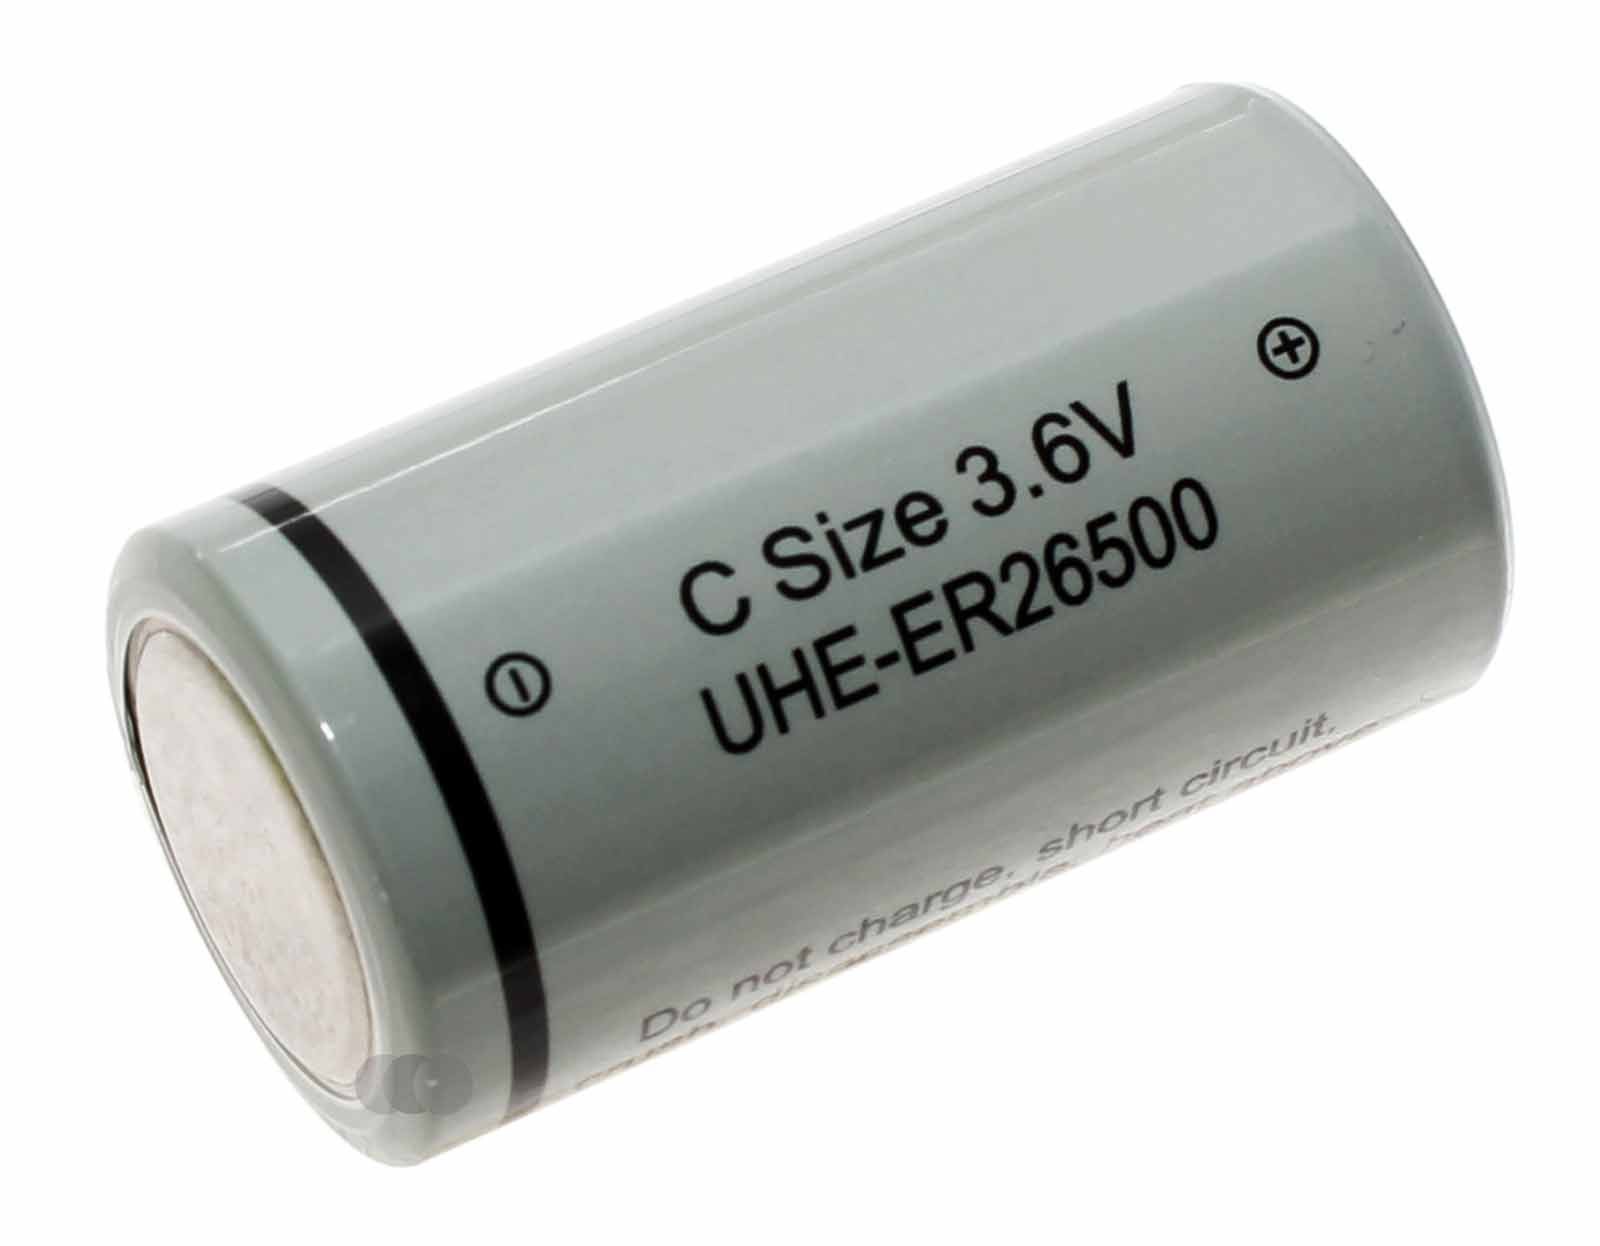 Ultralife UHE-ER26500 Baby C Lithium-Thionylchlorid Spezial Batterie (Industriezelle) mit 3,6 Volt und 9000mAh Kapazität